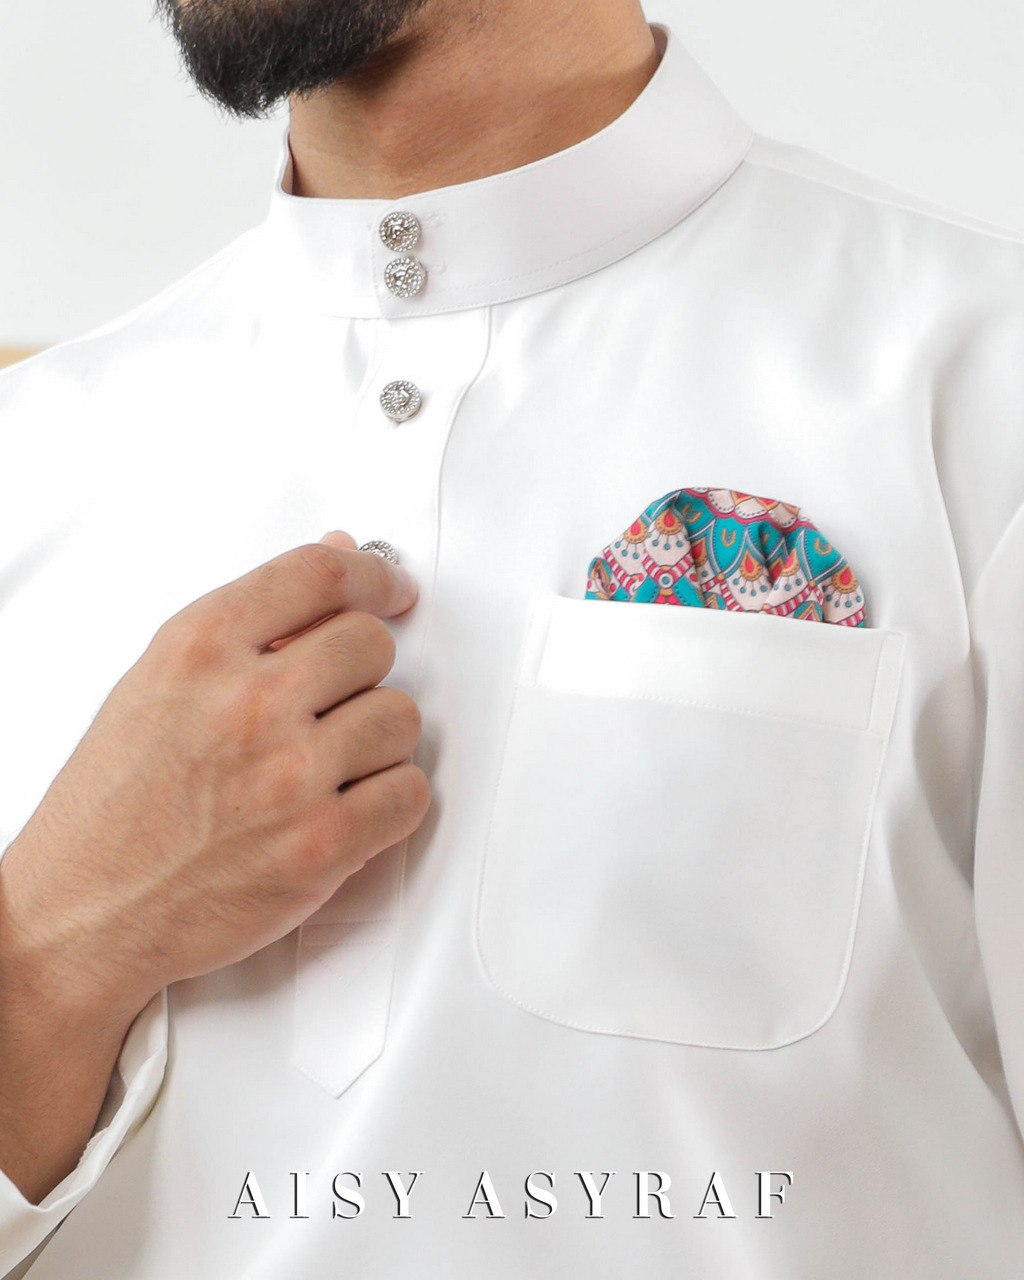 Baju Melayu Zaidan - White